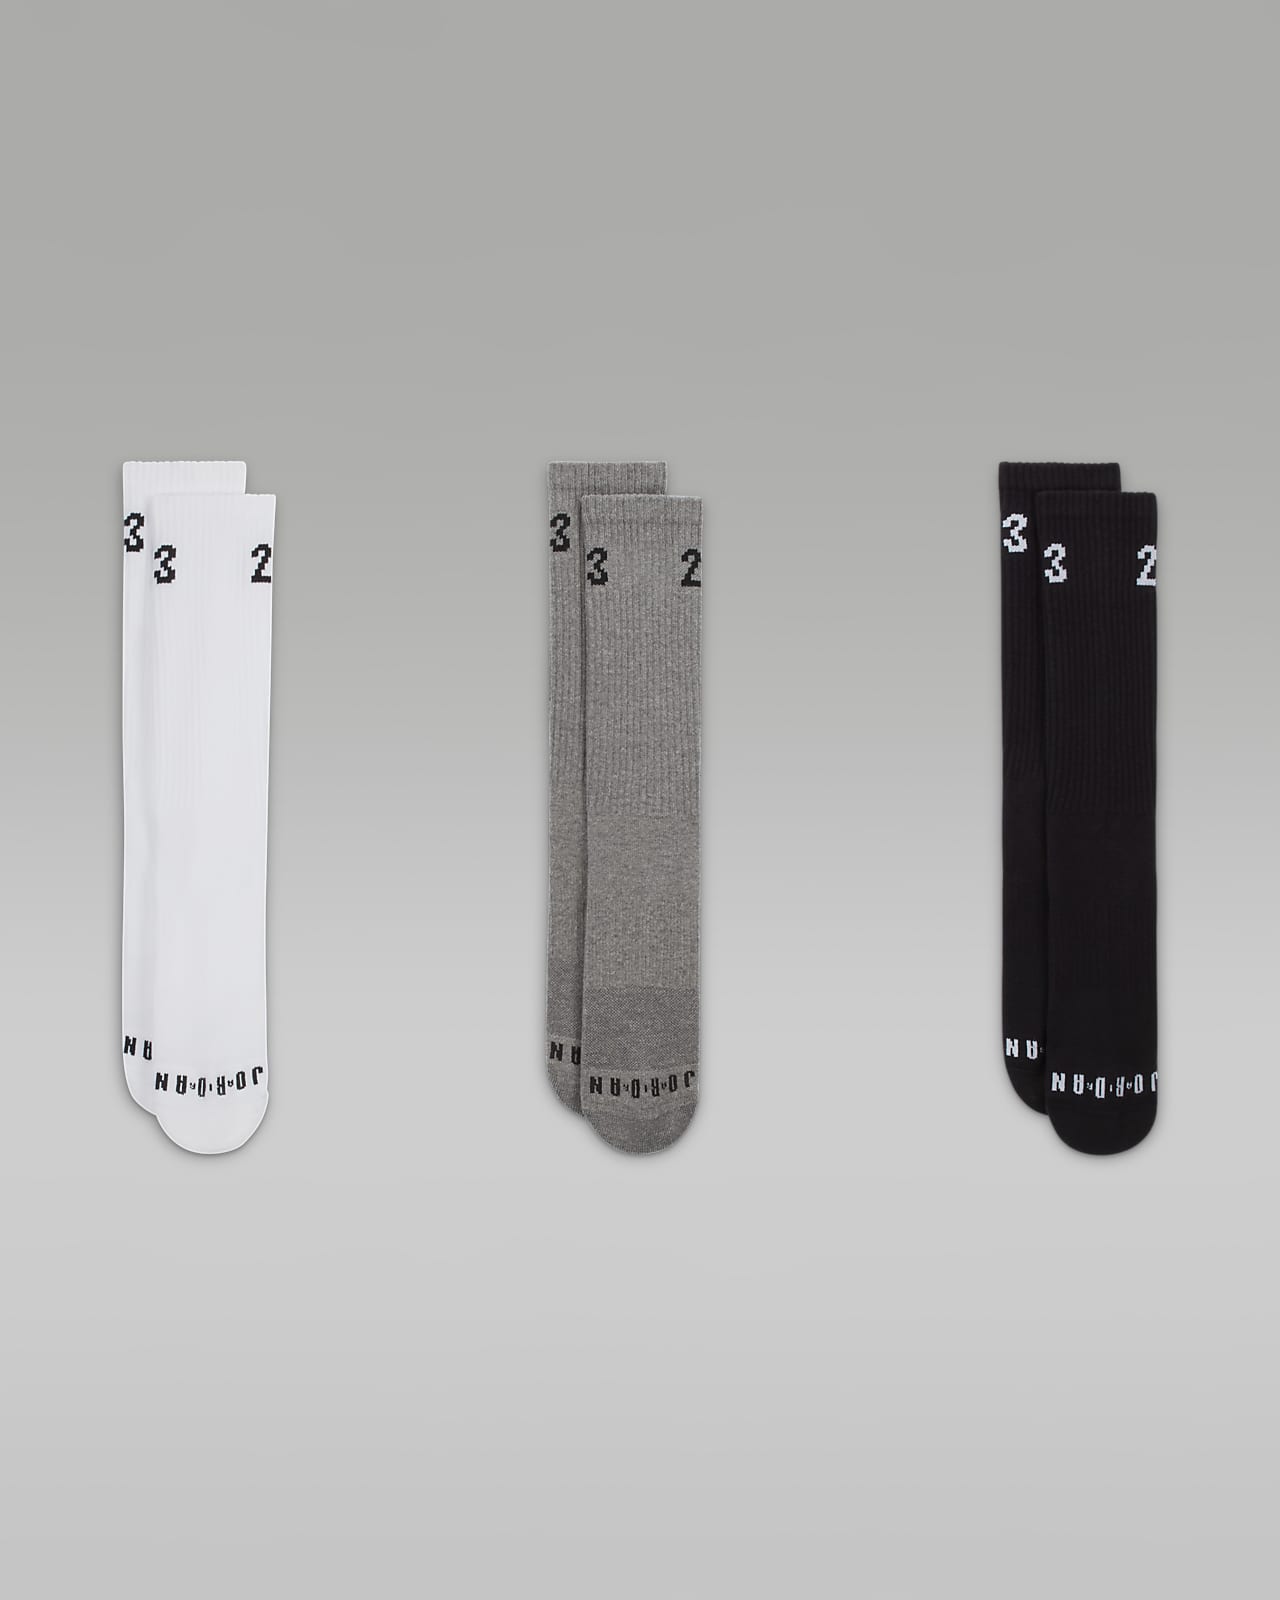 Los calcetines Jordan Essentials de longitud media son suaves y elásticos,  con soporte y amortiguación incorporados. 3 pares cubren casi la mitad de  la semana.